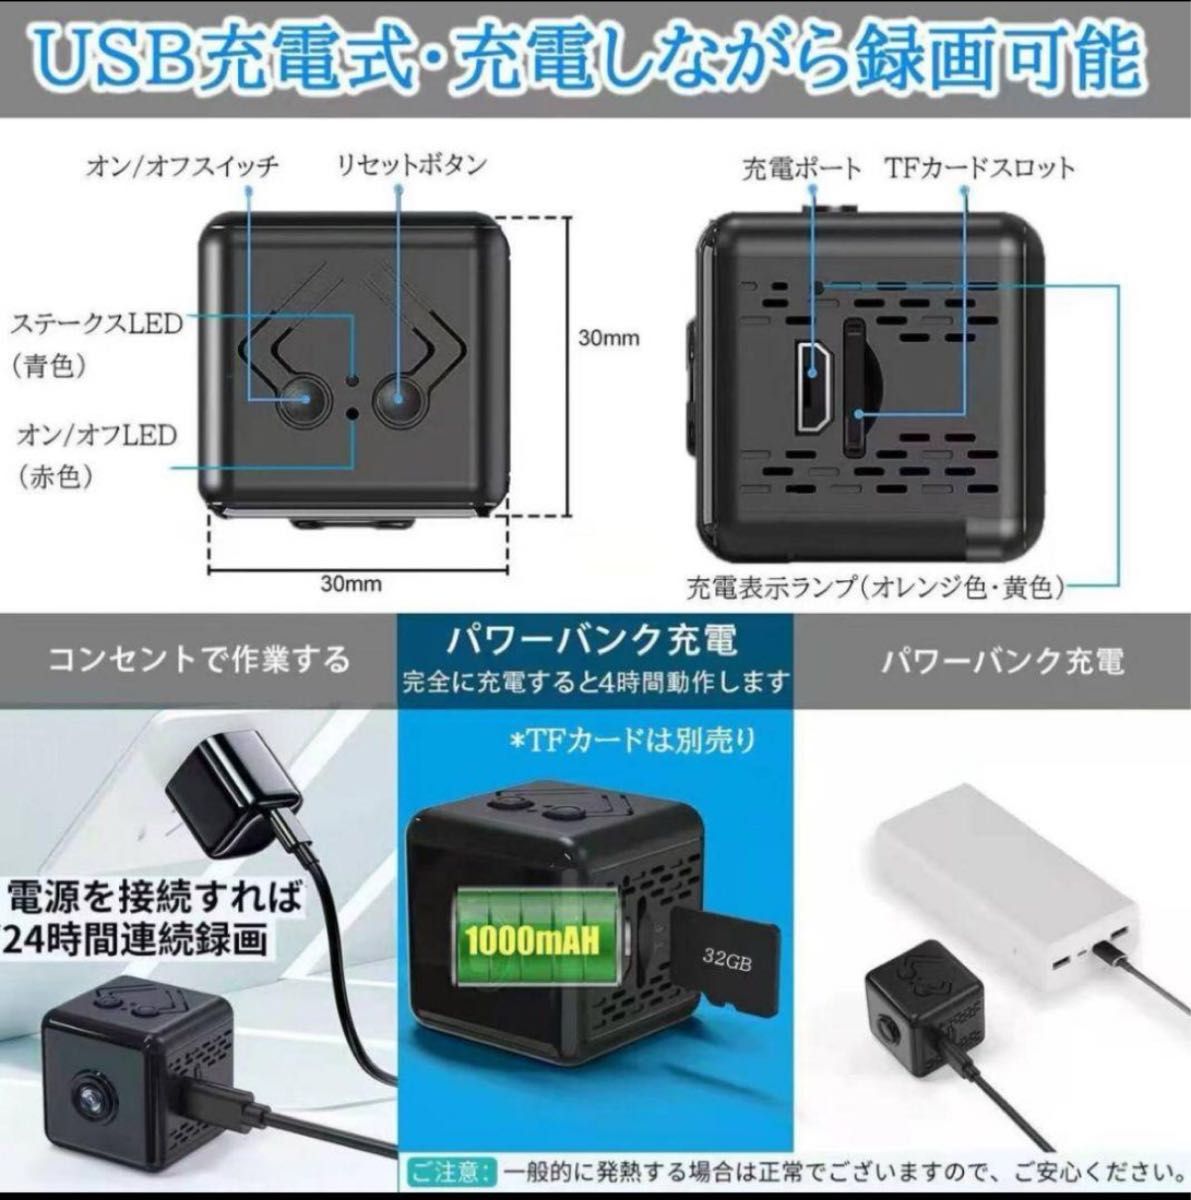 小型カメラ 防犯カメラ WIFI機能付き 録音録画 遠隔監視 動体検知 広角 室内防犯カメラ 監視カメラ USB充電